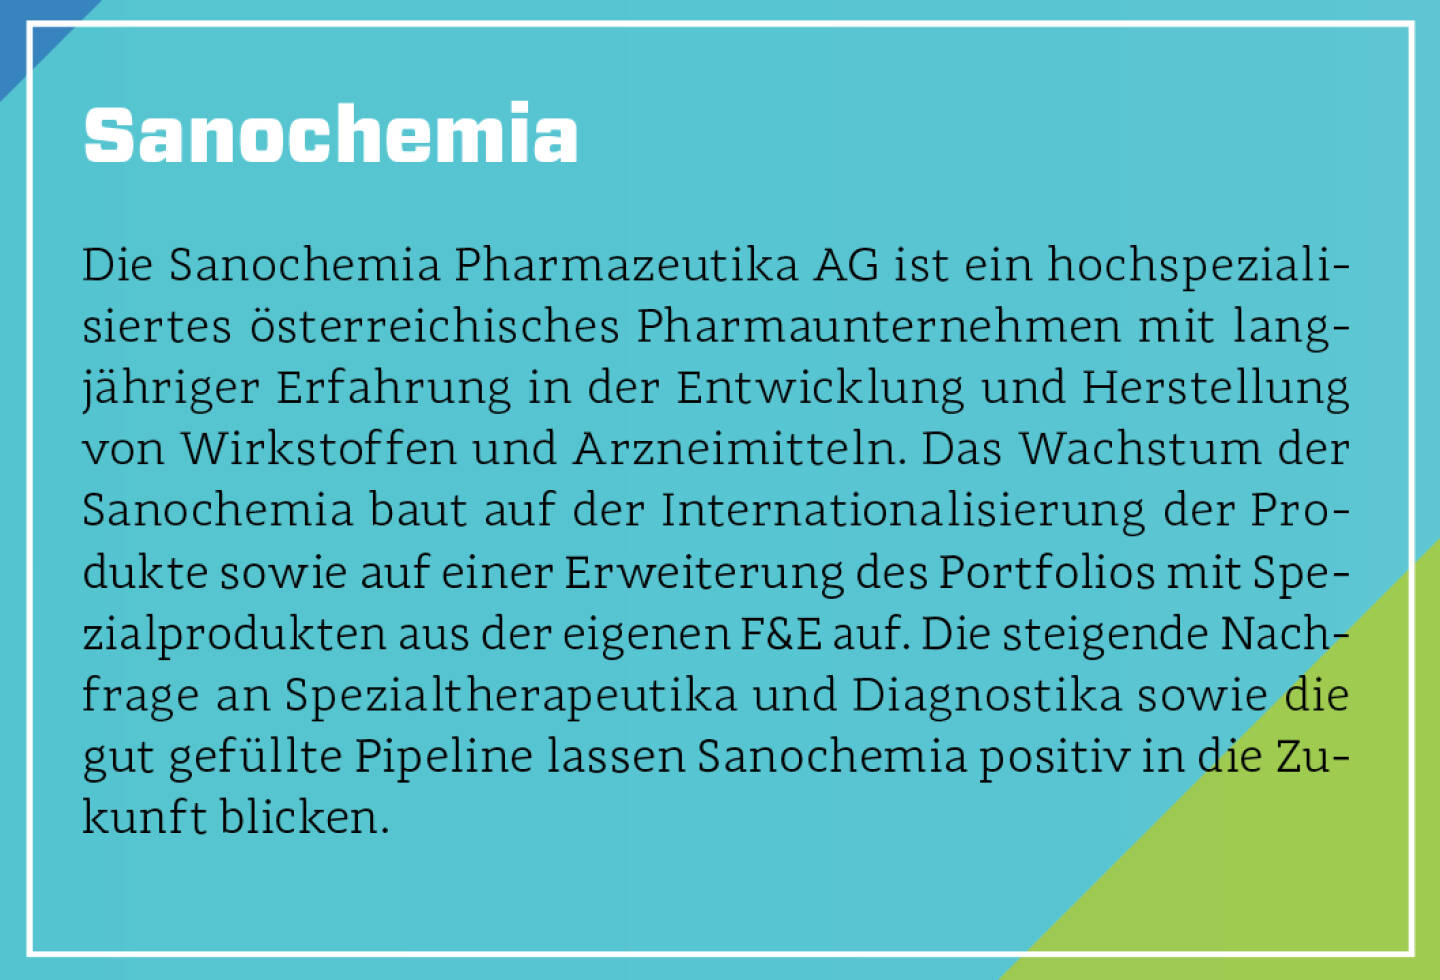 Sanochemia - Die Sanochemia Pharmazeutika AG ist ein hochspezialisiertes österreichisches Pharmaunternehmen mit langjähriger Erfahrung in der Entwicklung und Herstellung von Wirkstoffen und Arzneimitteln. Das Wachstum der Sanochemia baut auf der Internationalisierung der Produkte sowie auf einer Erweiterung des Portfolios mit Spezialprodukten aus der eigenen F&E auf. Die steigende Nachfrage an Spezialtherapeutika und Diagnostika sowie die gut gefüllte Pipeline lassen Sanochemia positiv in die Zukunft blicken.
